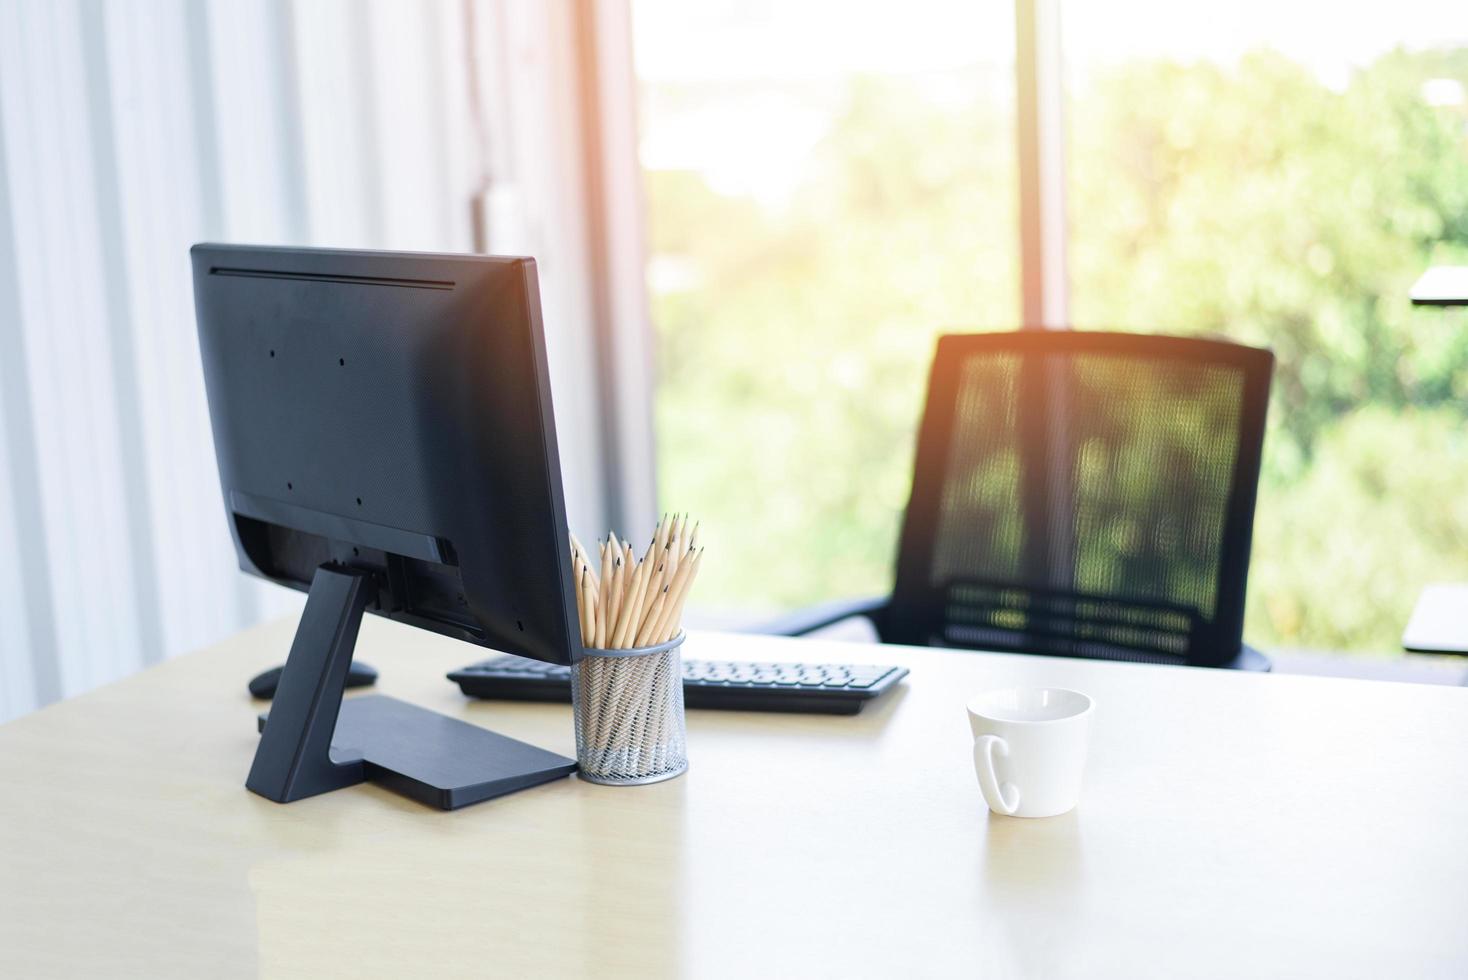 skrivbord på kontoret med datorskrivbordspennor och kaffekopp för designerskrivbord - bord arbetsplats affärskontor naturbakgrund foto